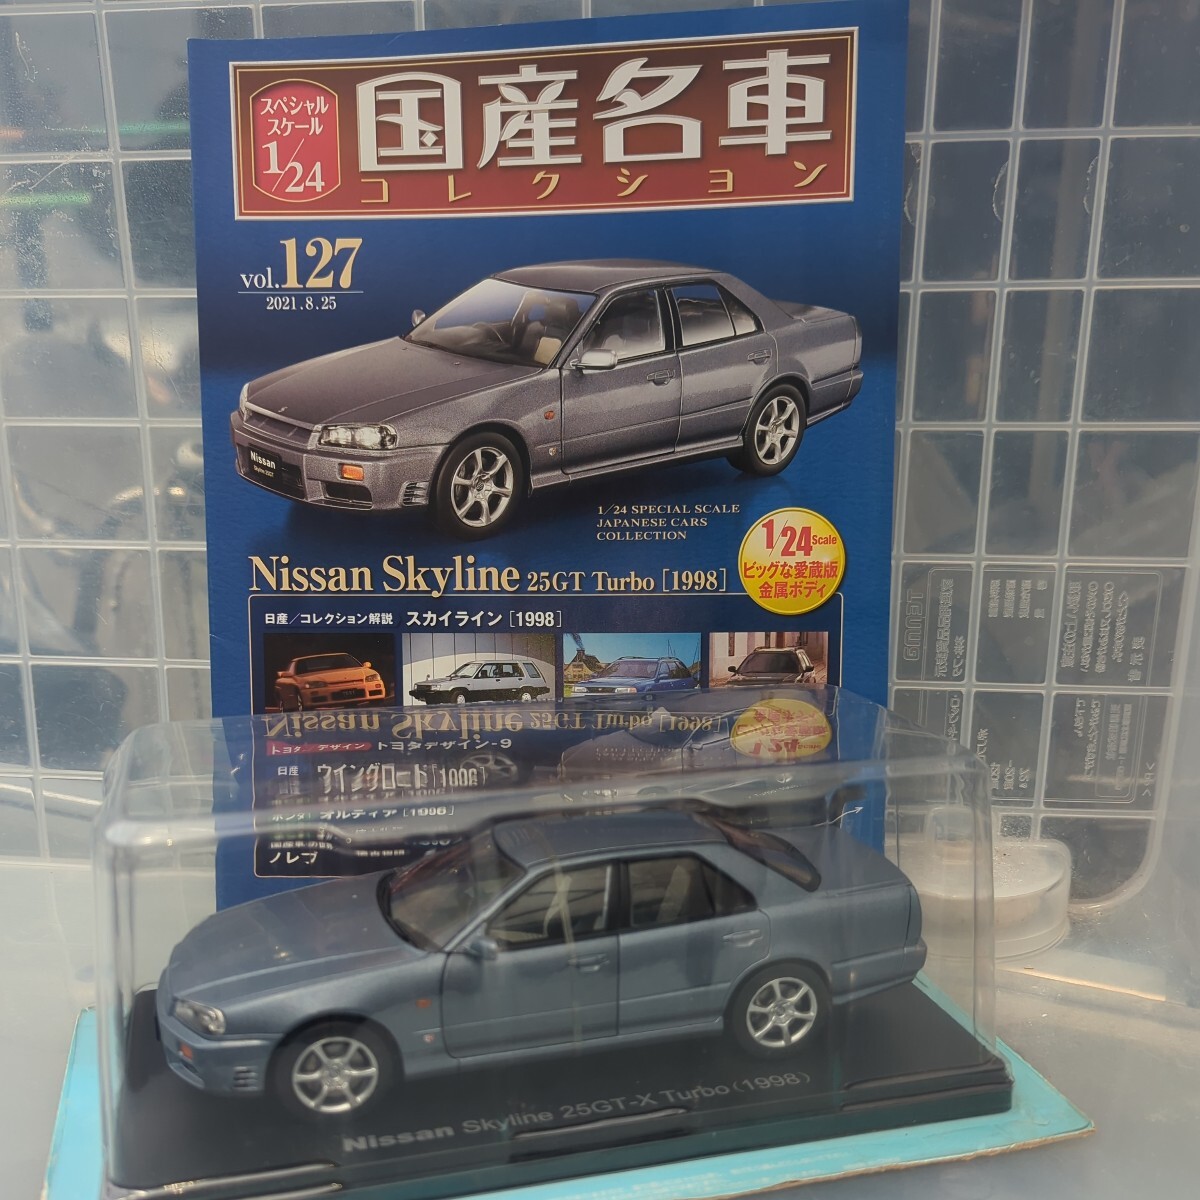 1/24 国産名車コレクション Nissan Skyline 25GT Turbo 1998の画像1